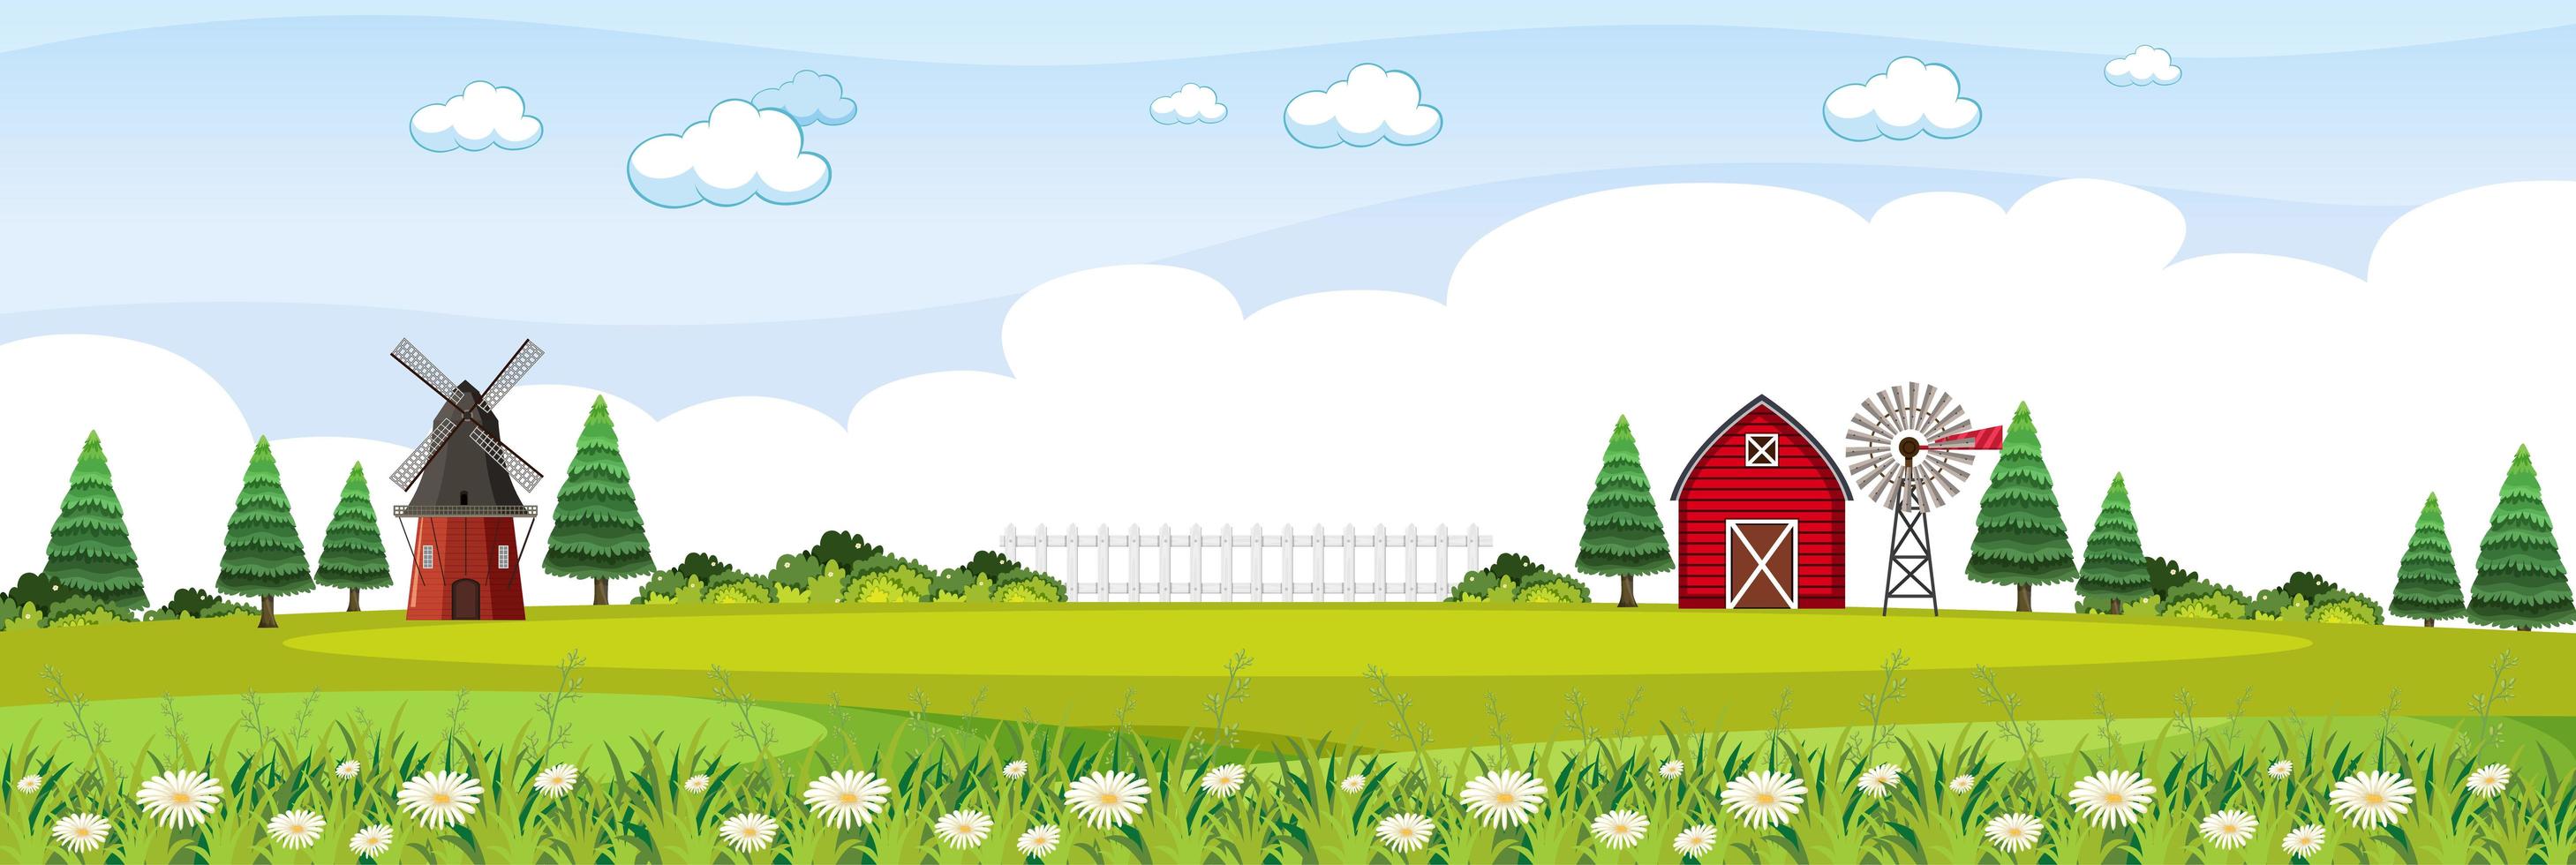 paesaggio agricolo con fienile rosso e mulino a vento nella stagione estiva vettore